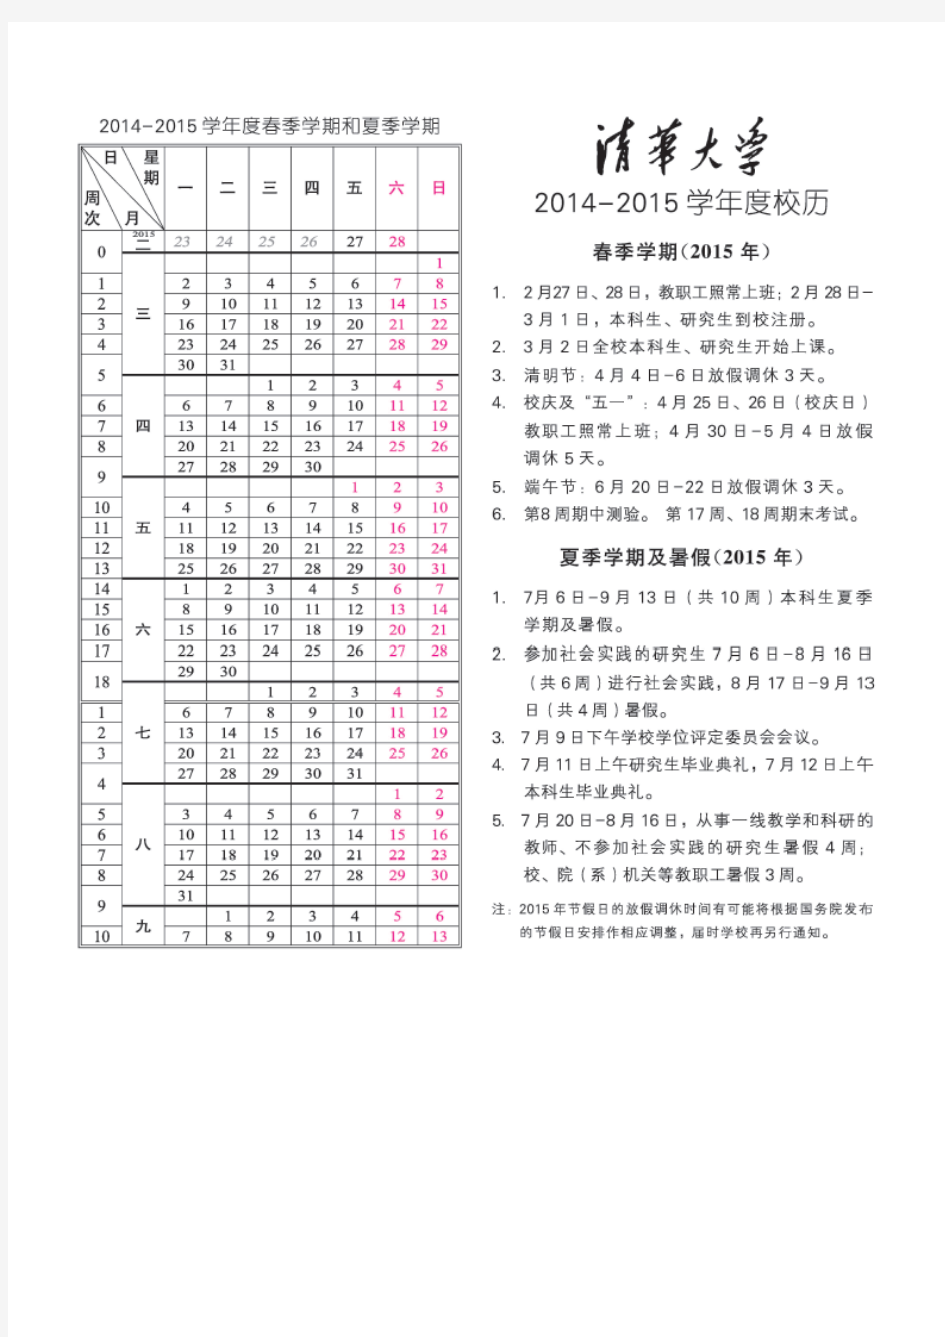 清华大学2014~2015学年校历